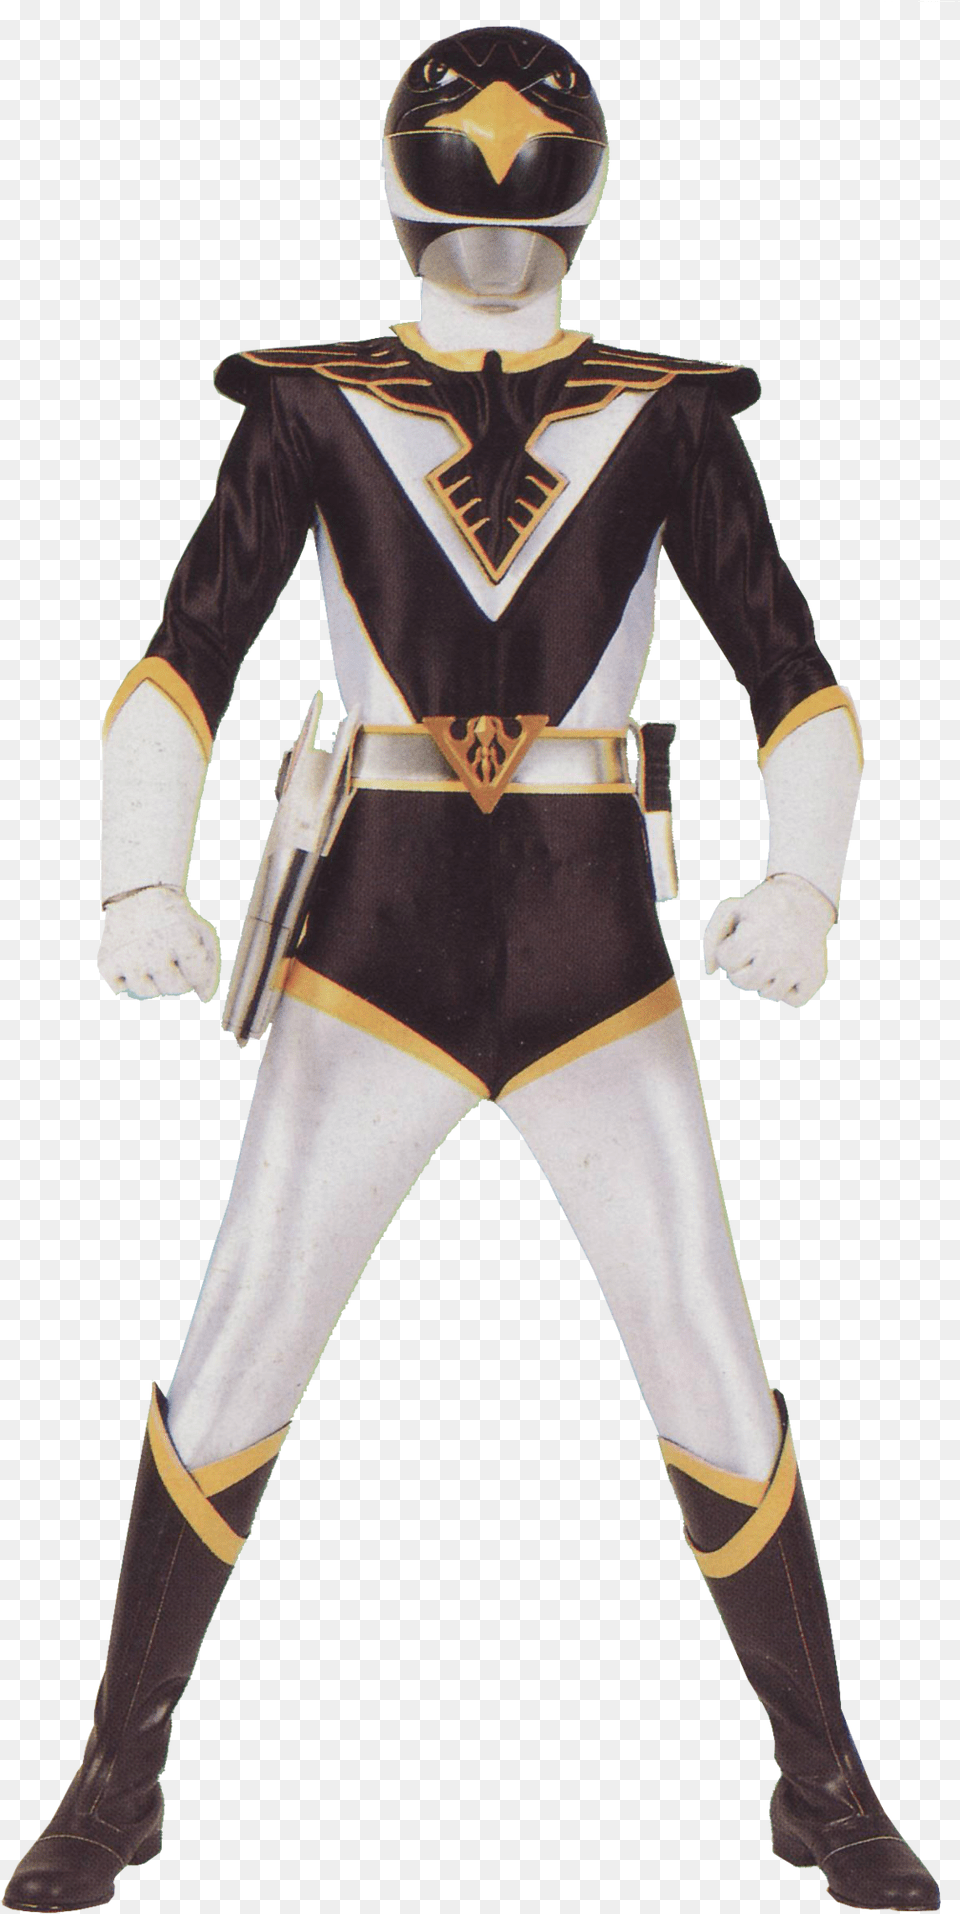 Series 15 Jetman Black Ranger Choujin Sentai Jetman Black, Clothing, Costume, Person, Adult Png Image